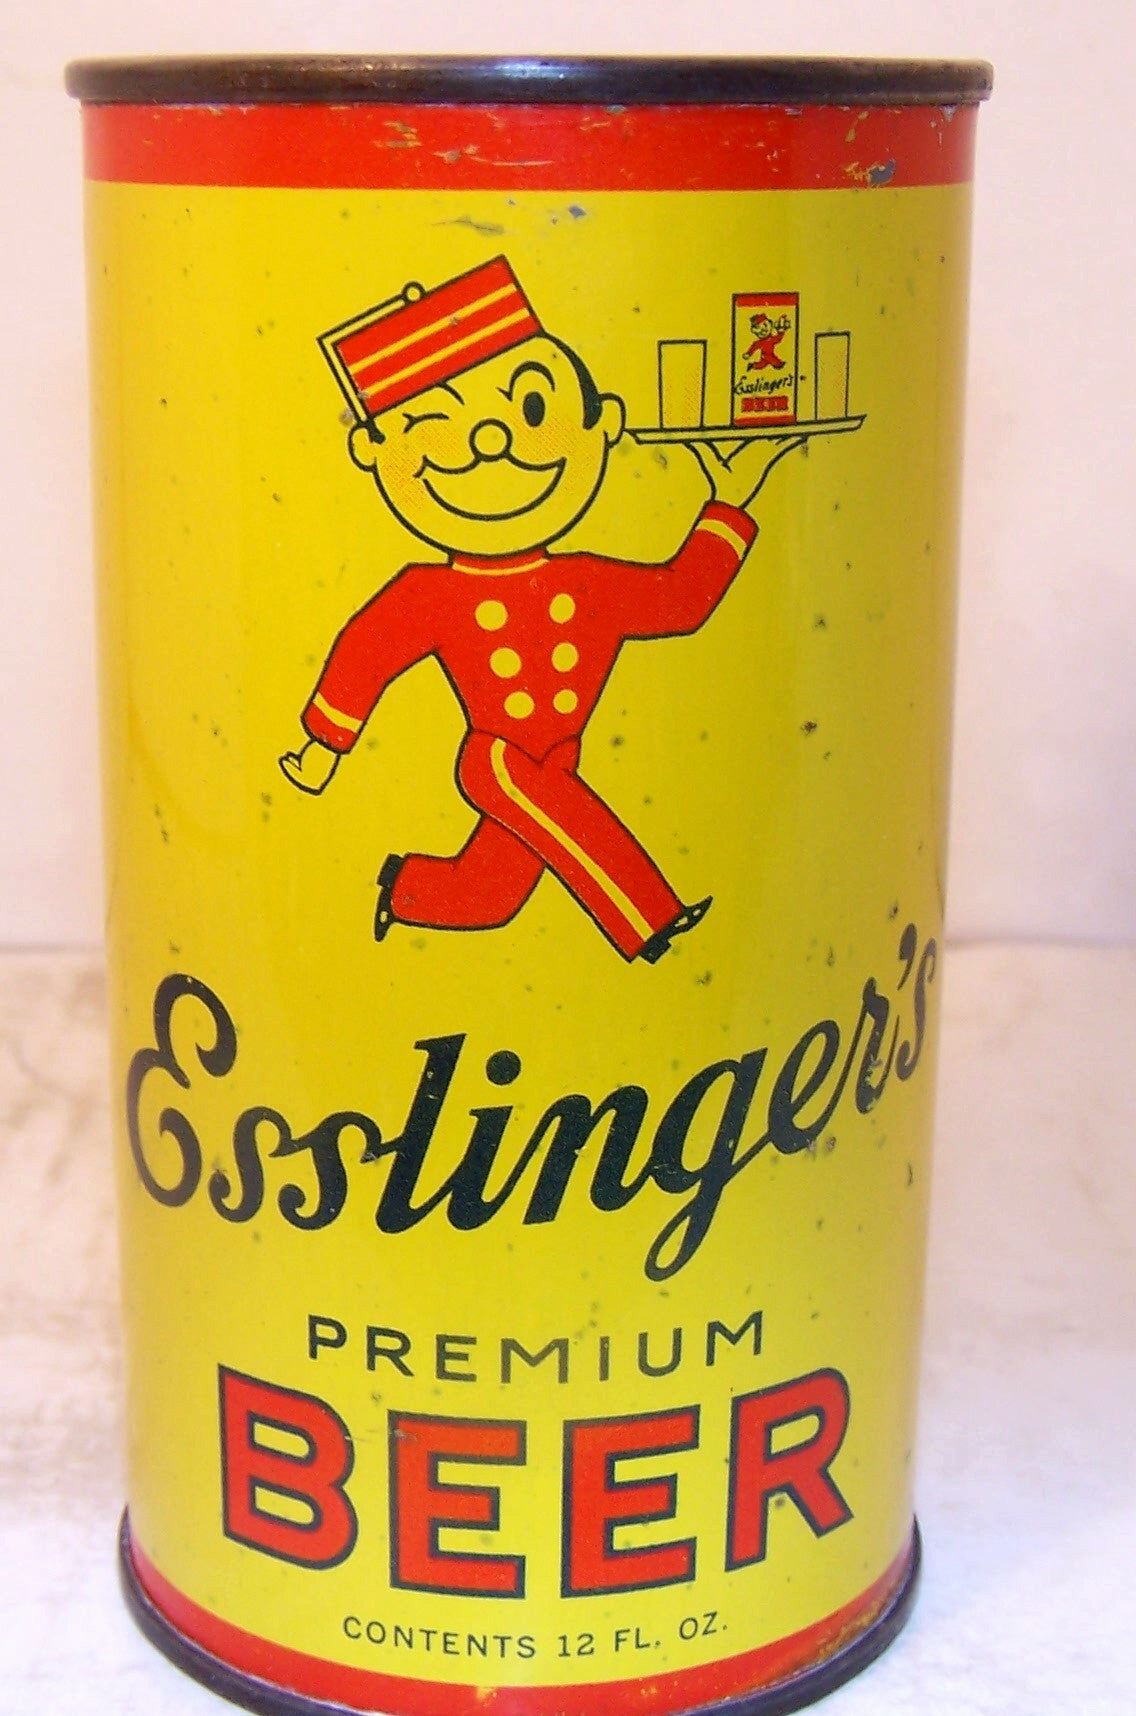 Esslinger's Premium Beer, Lilek page # 243, Grade 1- Sold 9/19/15